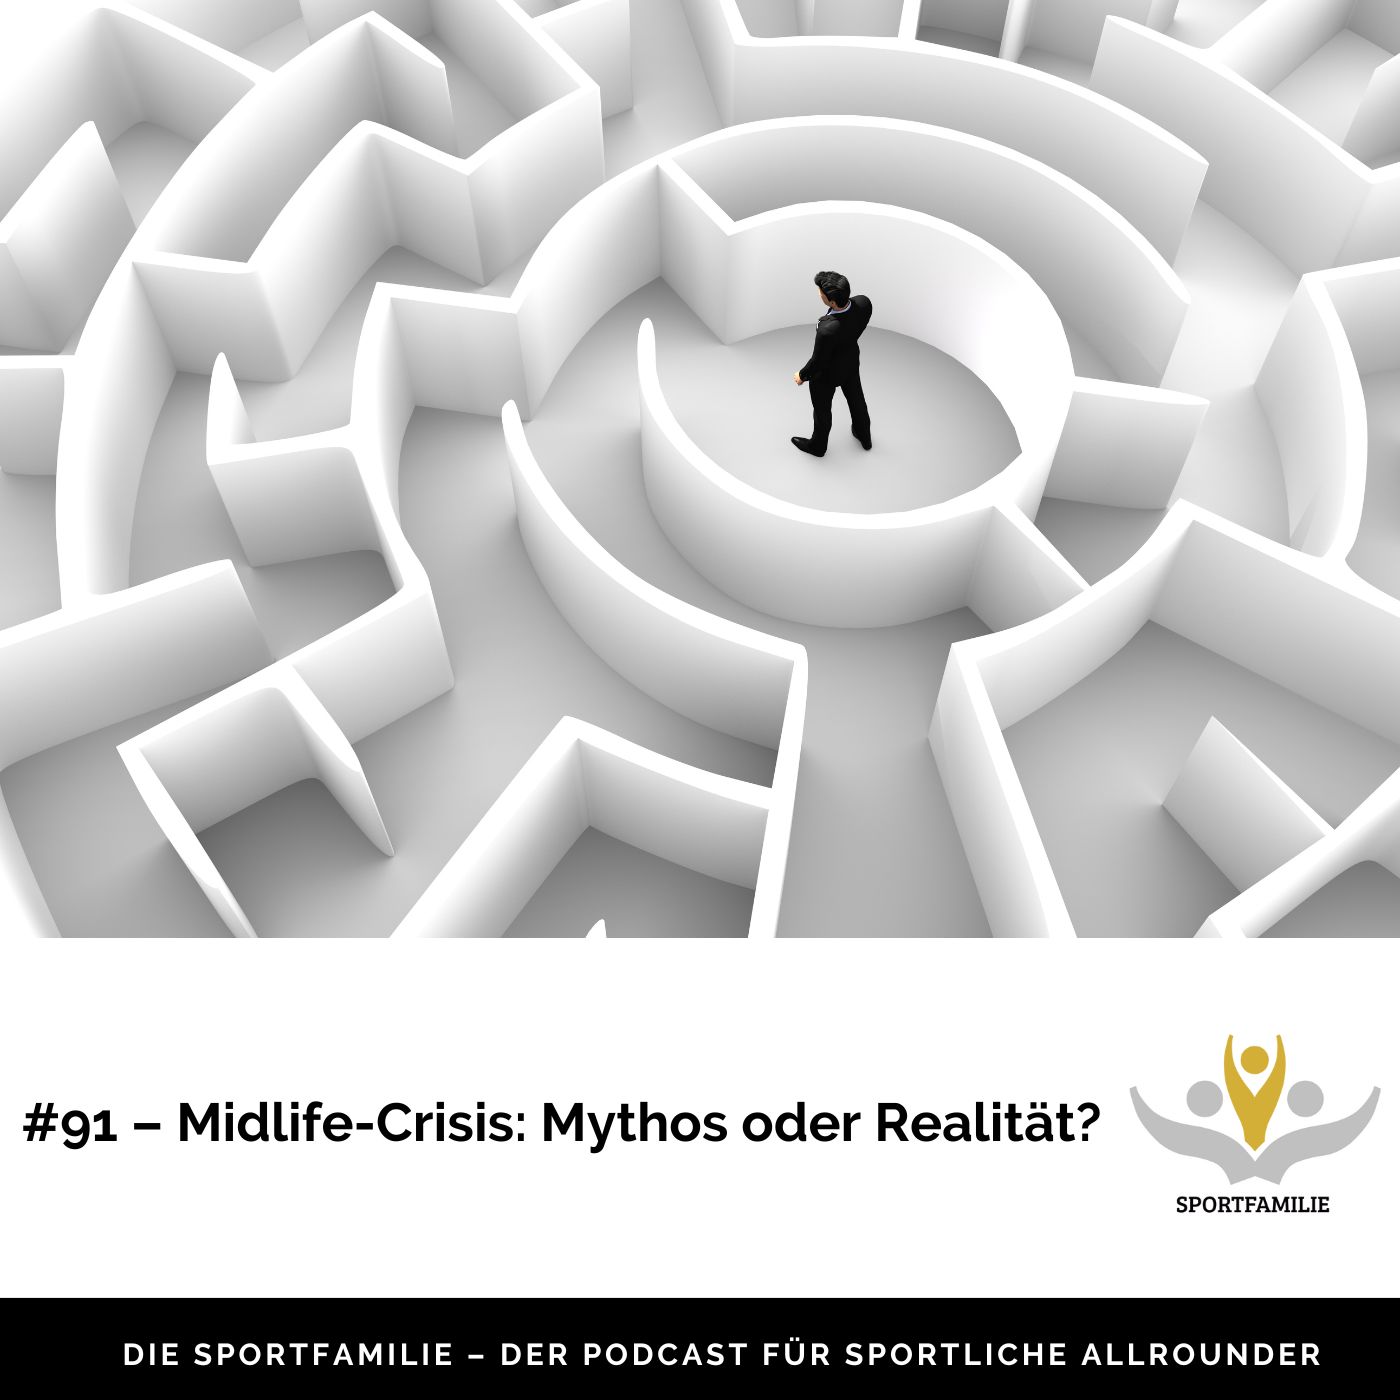 #91 – Über die Midlife-Crisis